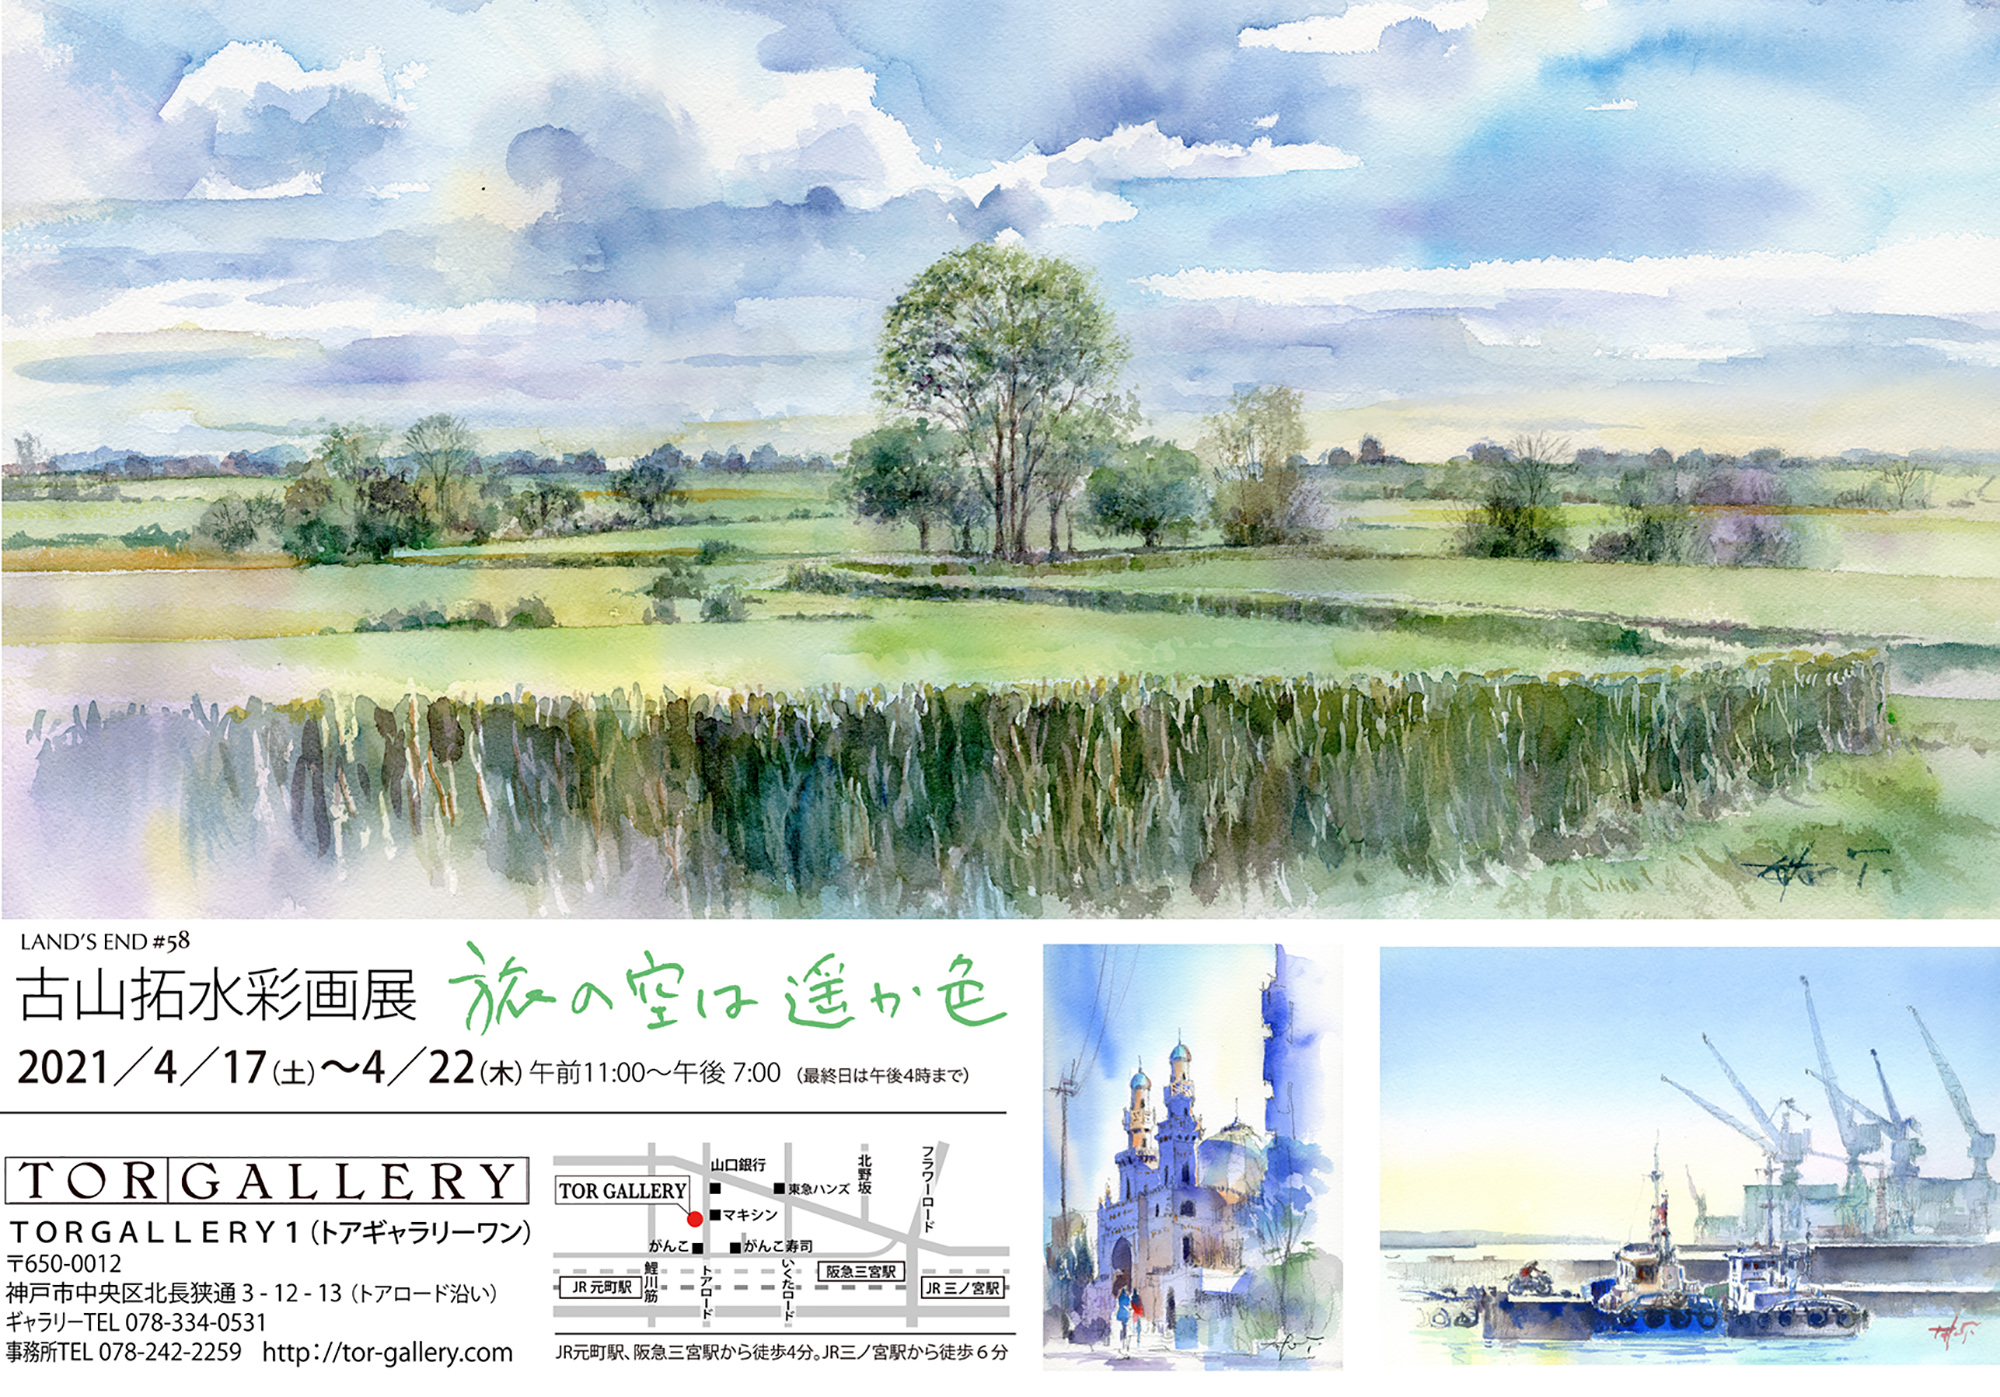 2021/4/17~22古山拓個展「旅の空は遥か色」神戸・トアギャラリーにて開催